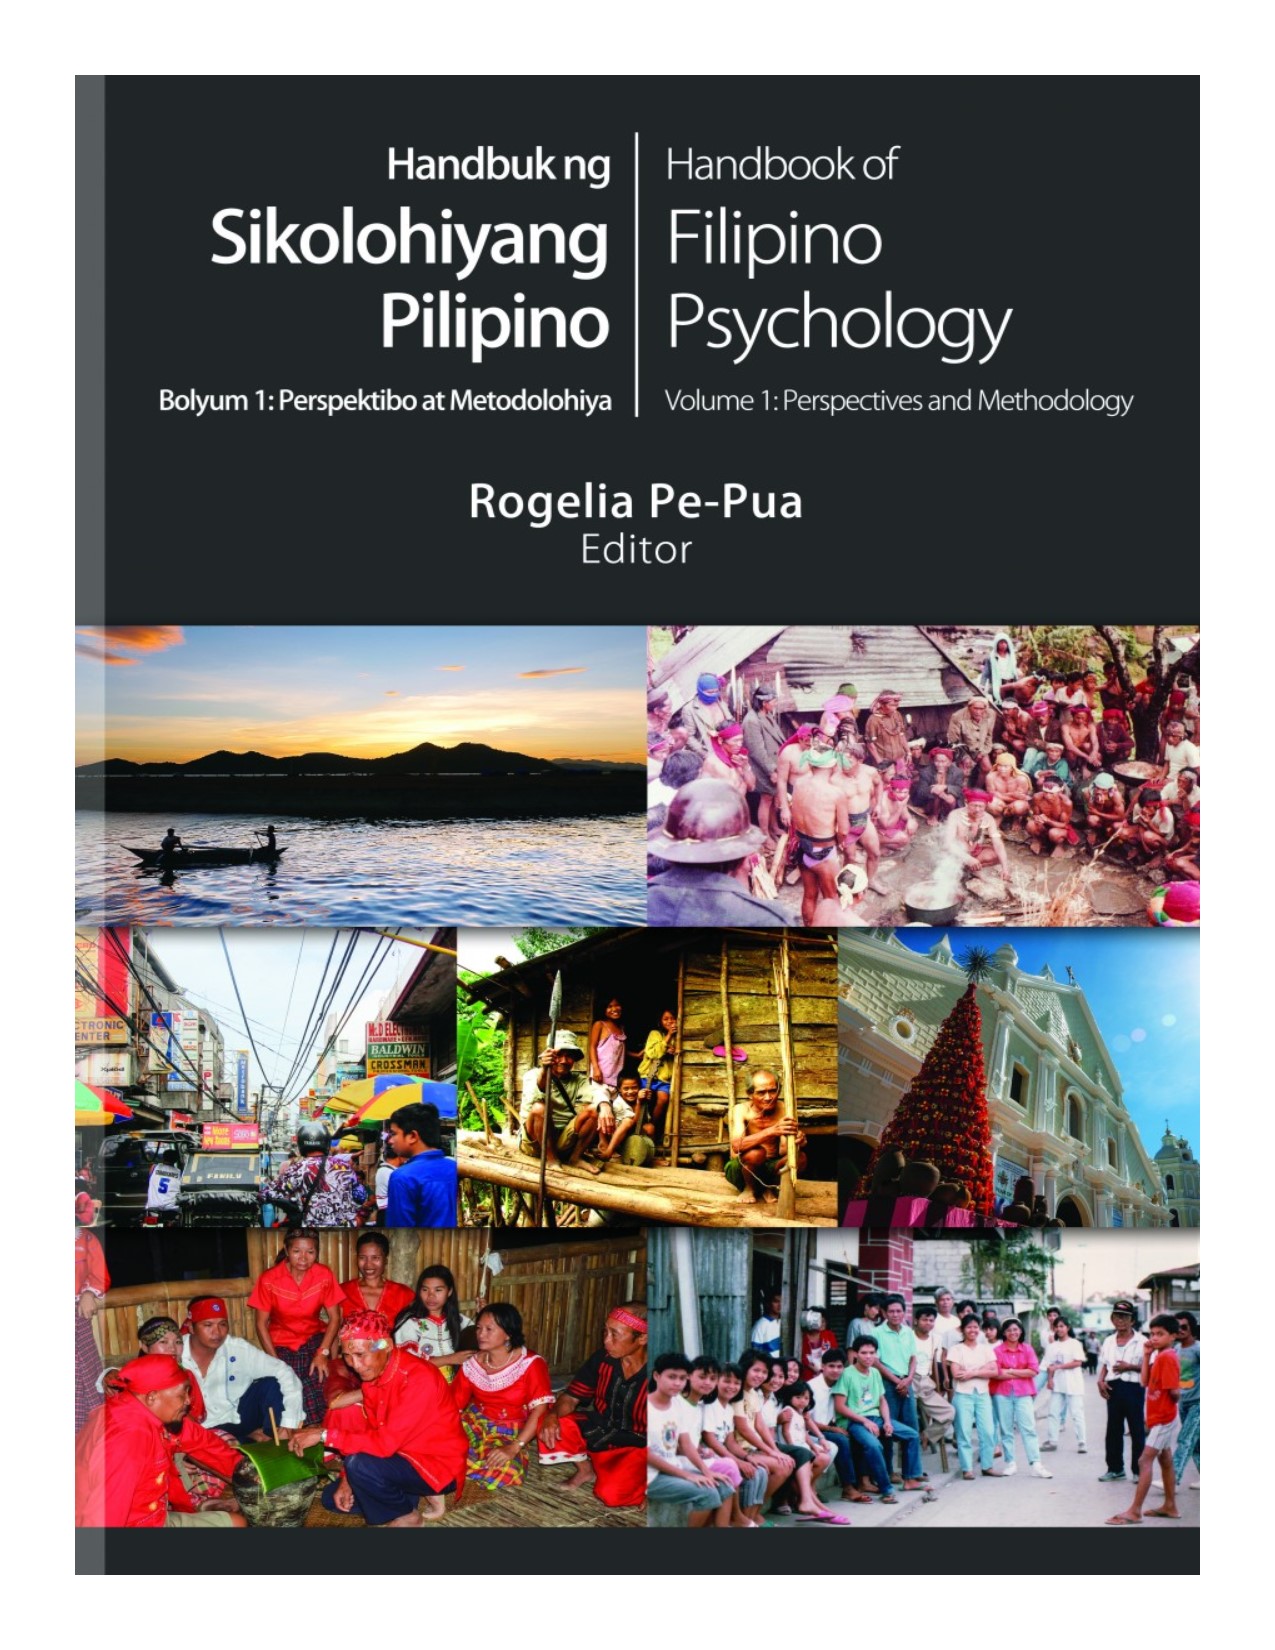 Handbuk ng sikolohiyang Pilipino Handbook of Filipino psychology